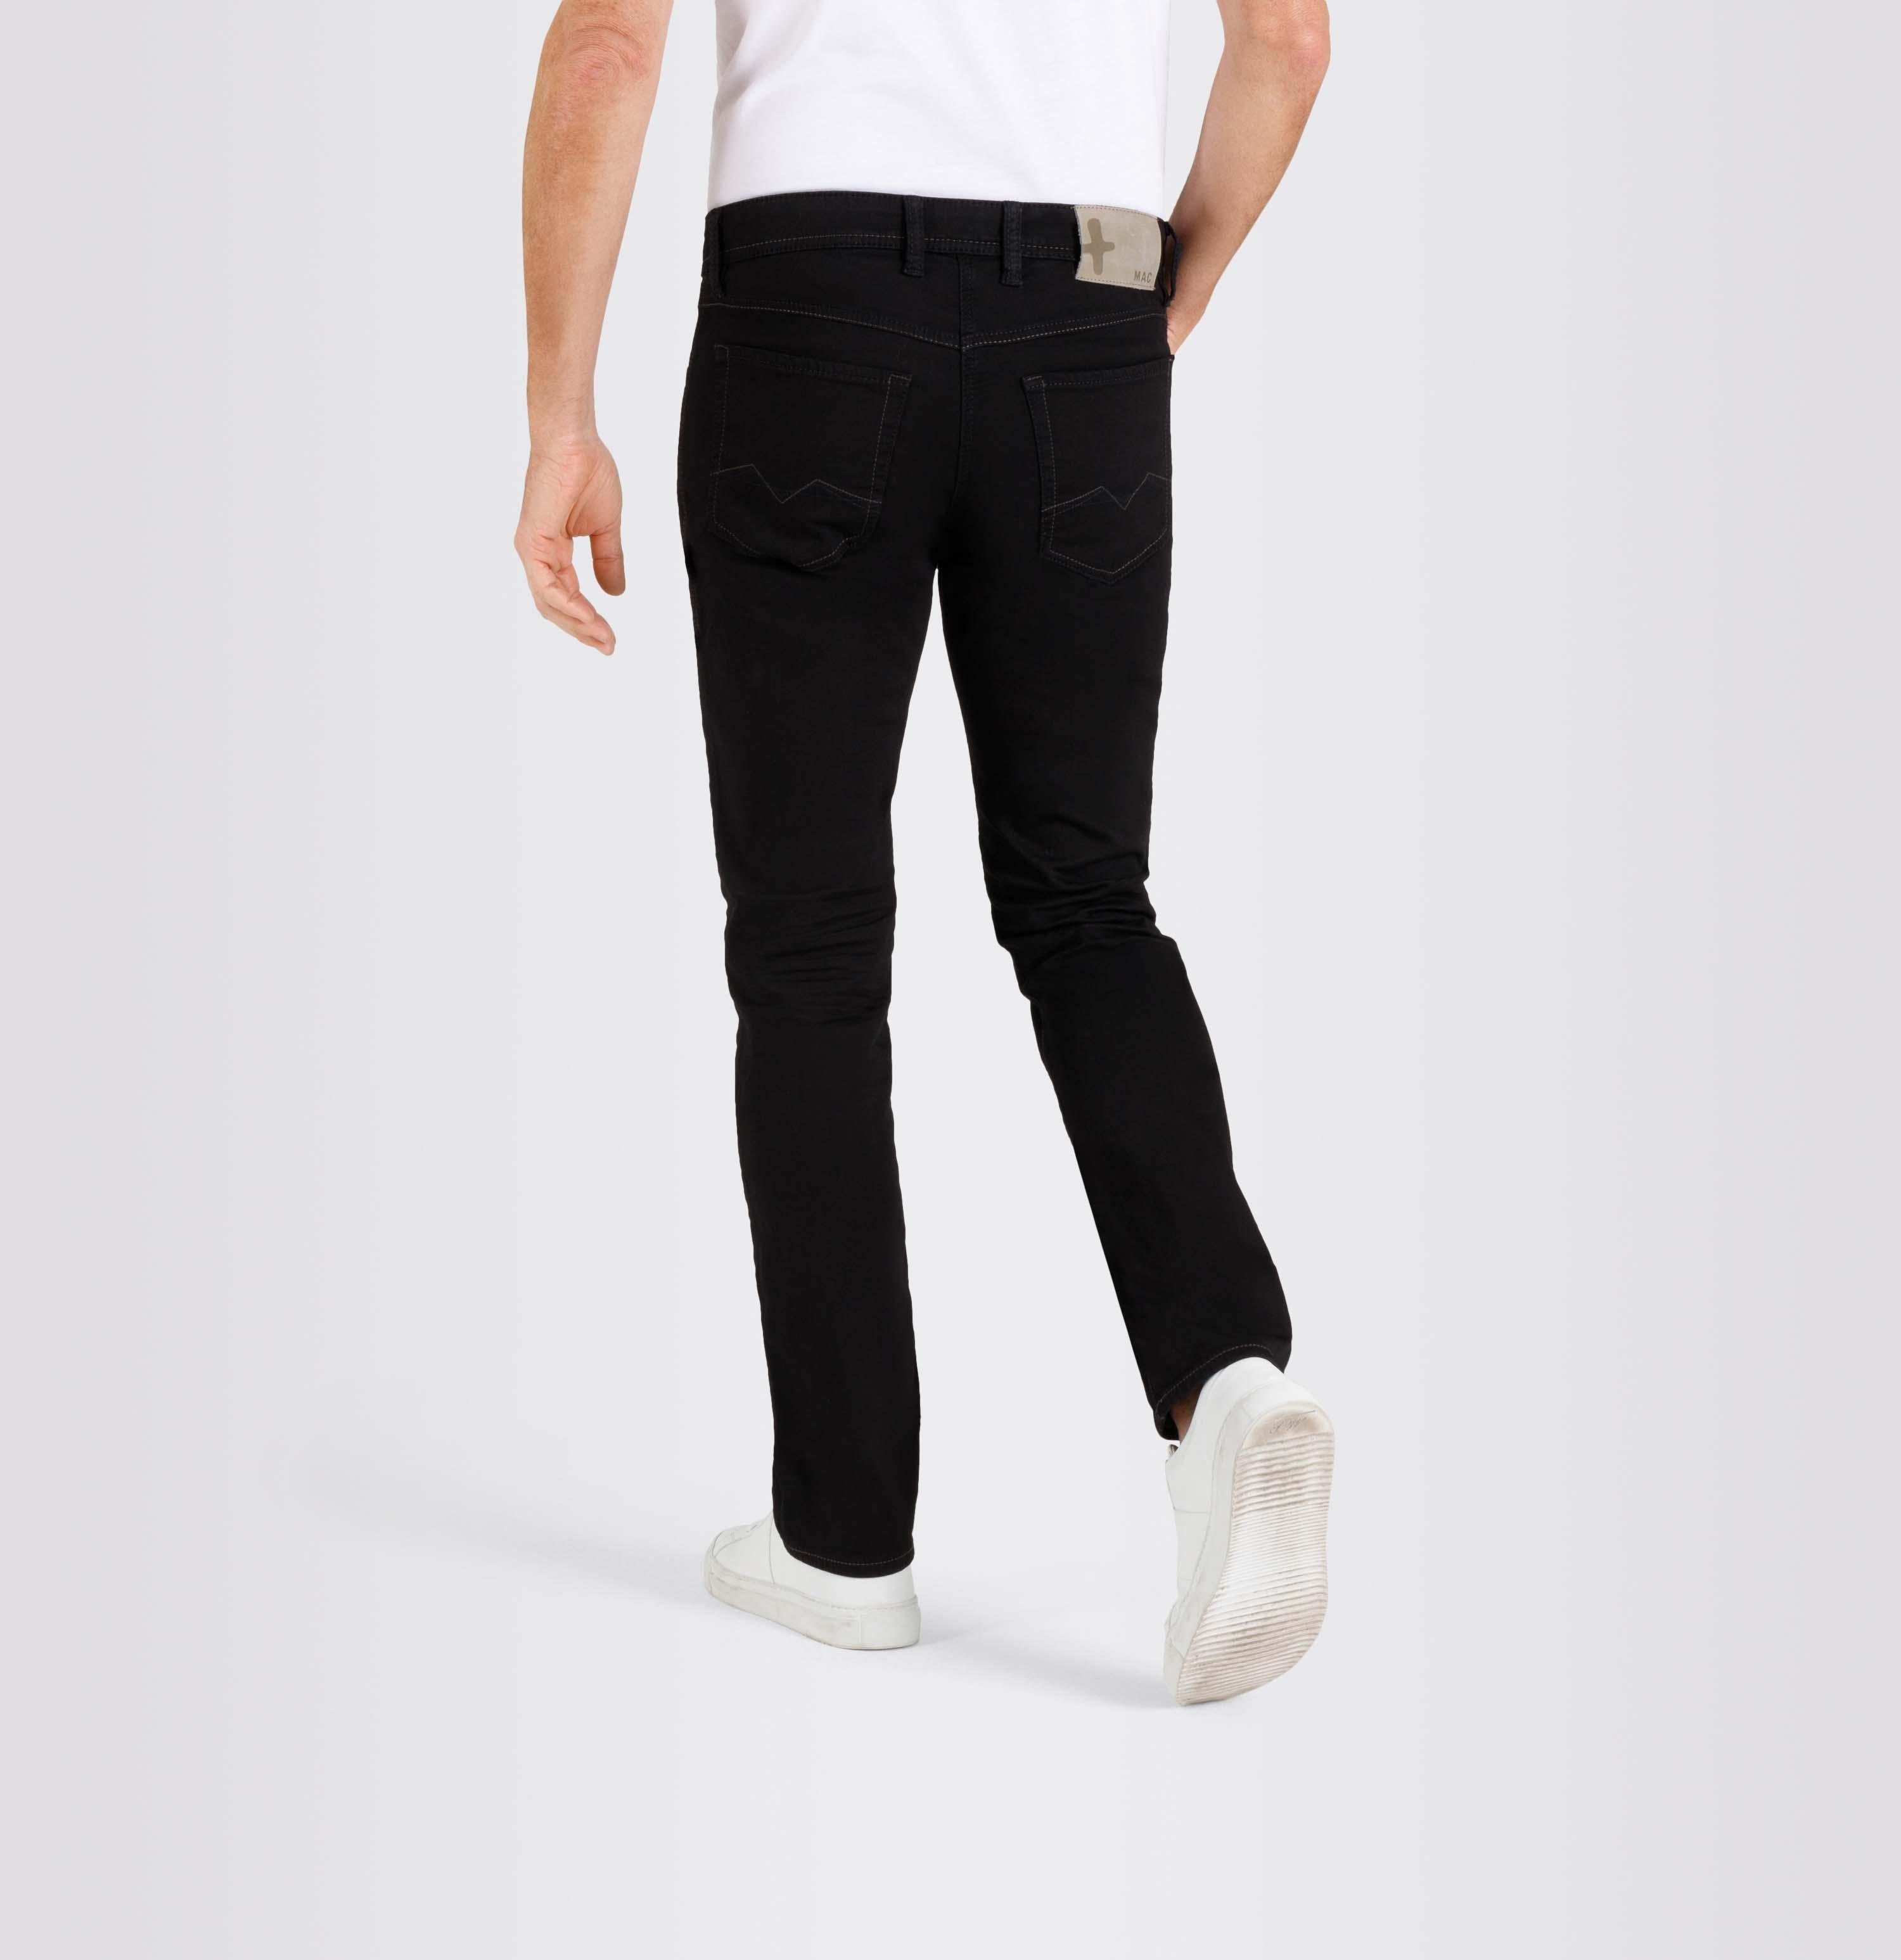 JOG'N black 5-Pocket-Jeans JEANS MAC H896 black clean MAC